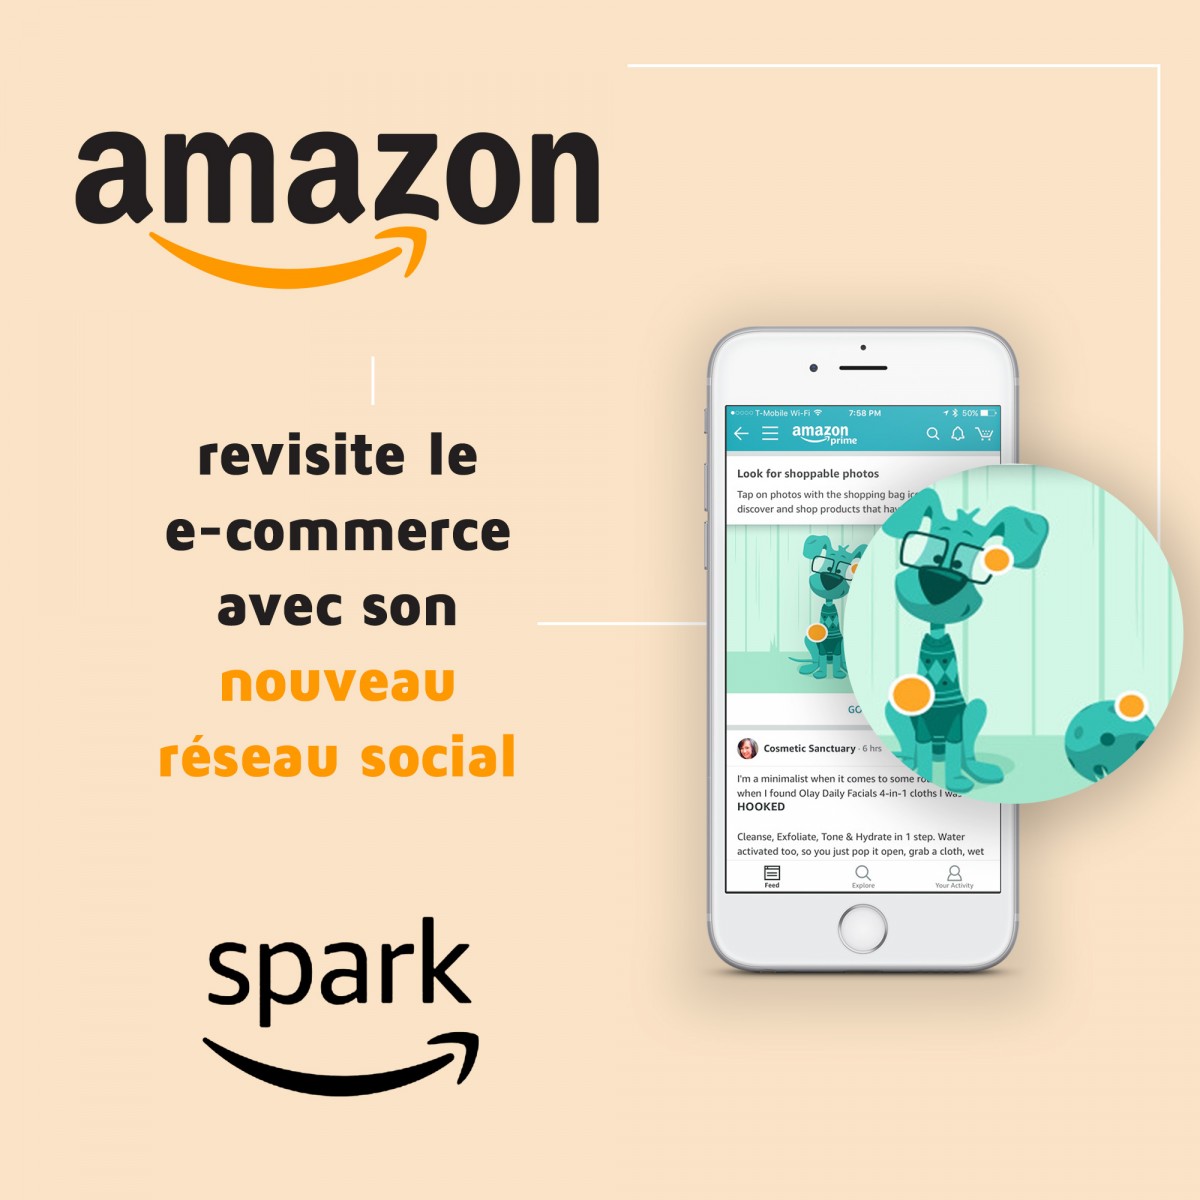 Amazon revisite le e-commerce avec son réseau social Spark